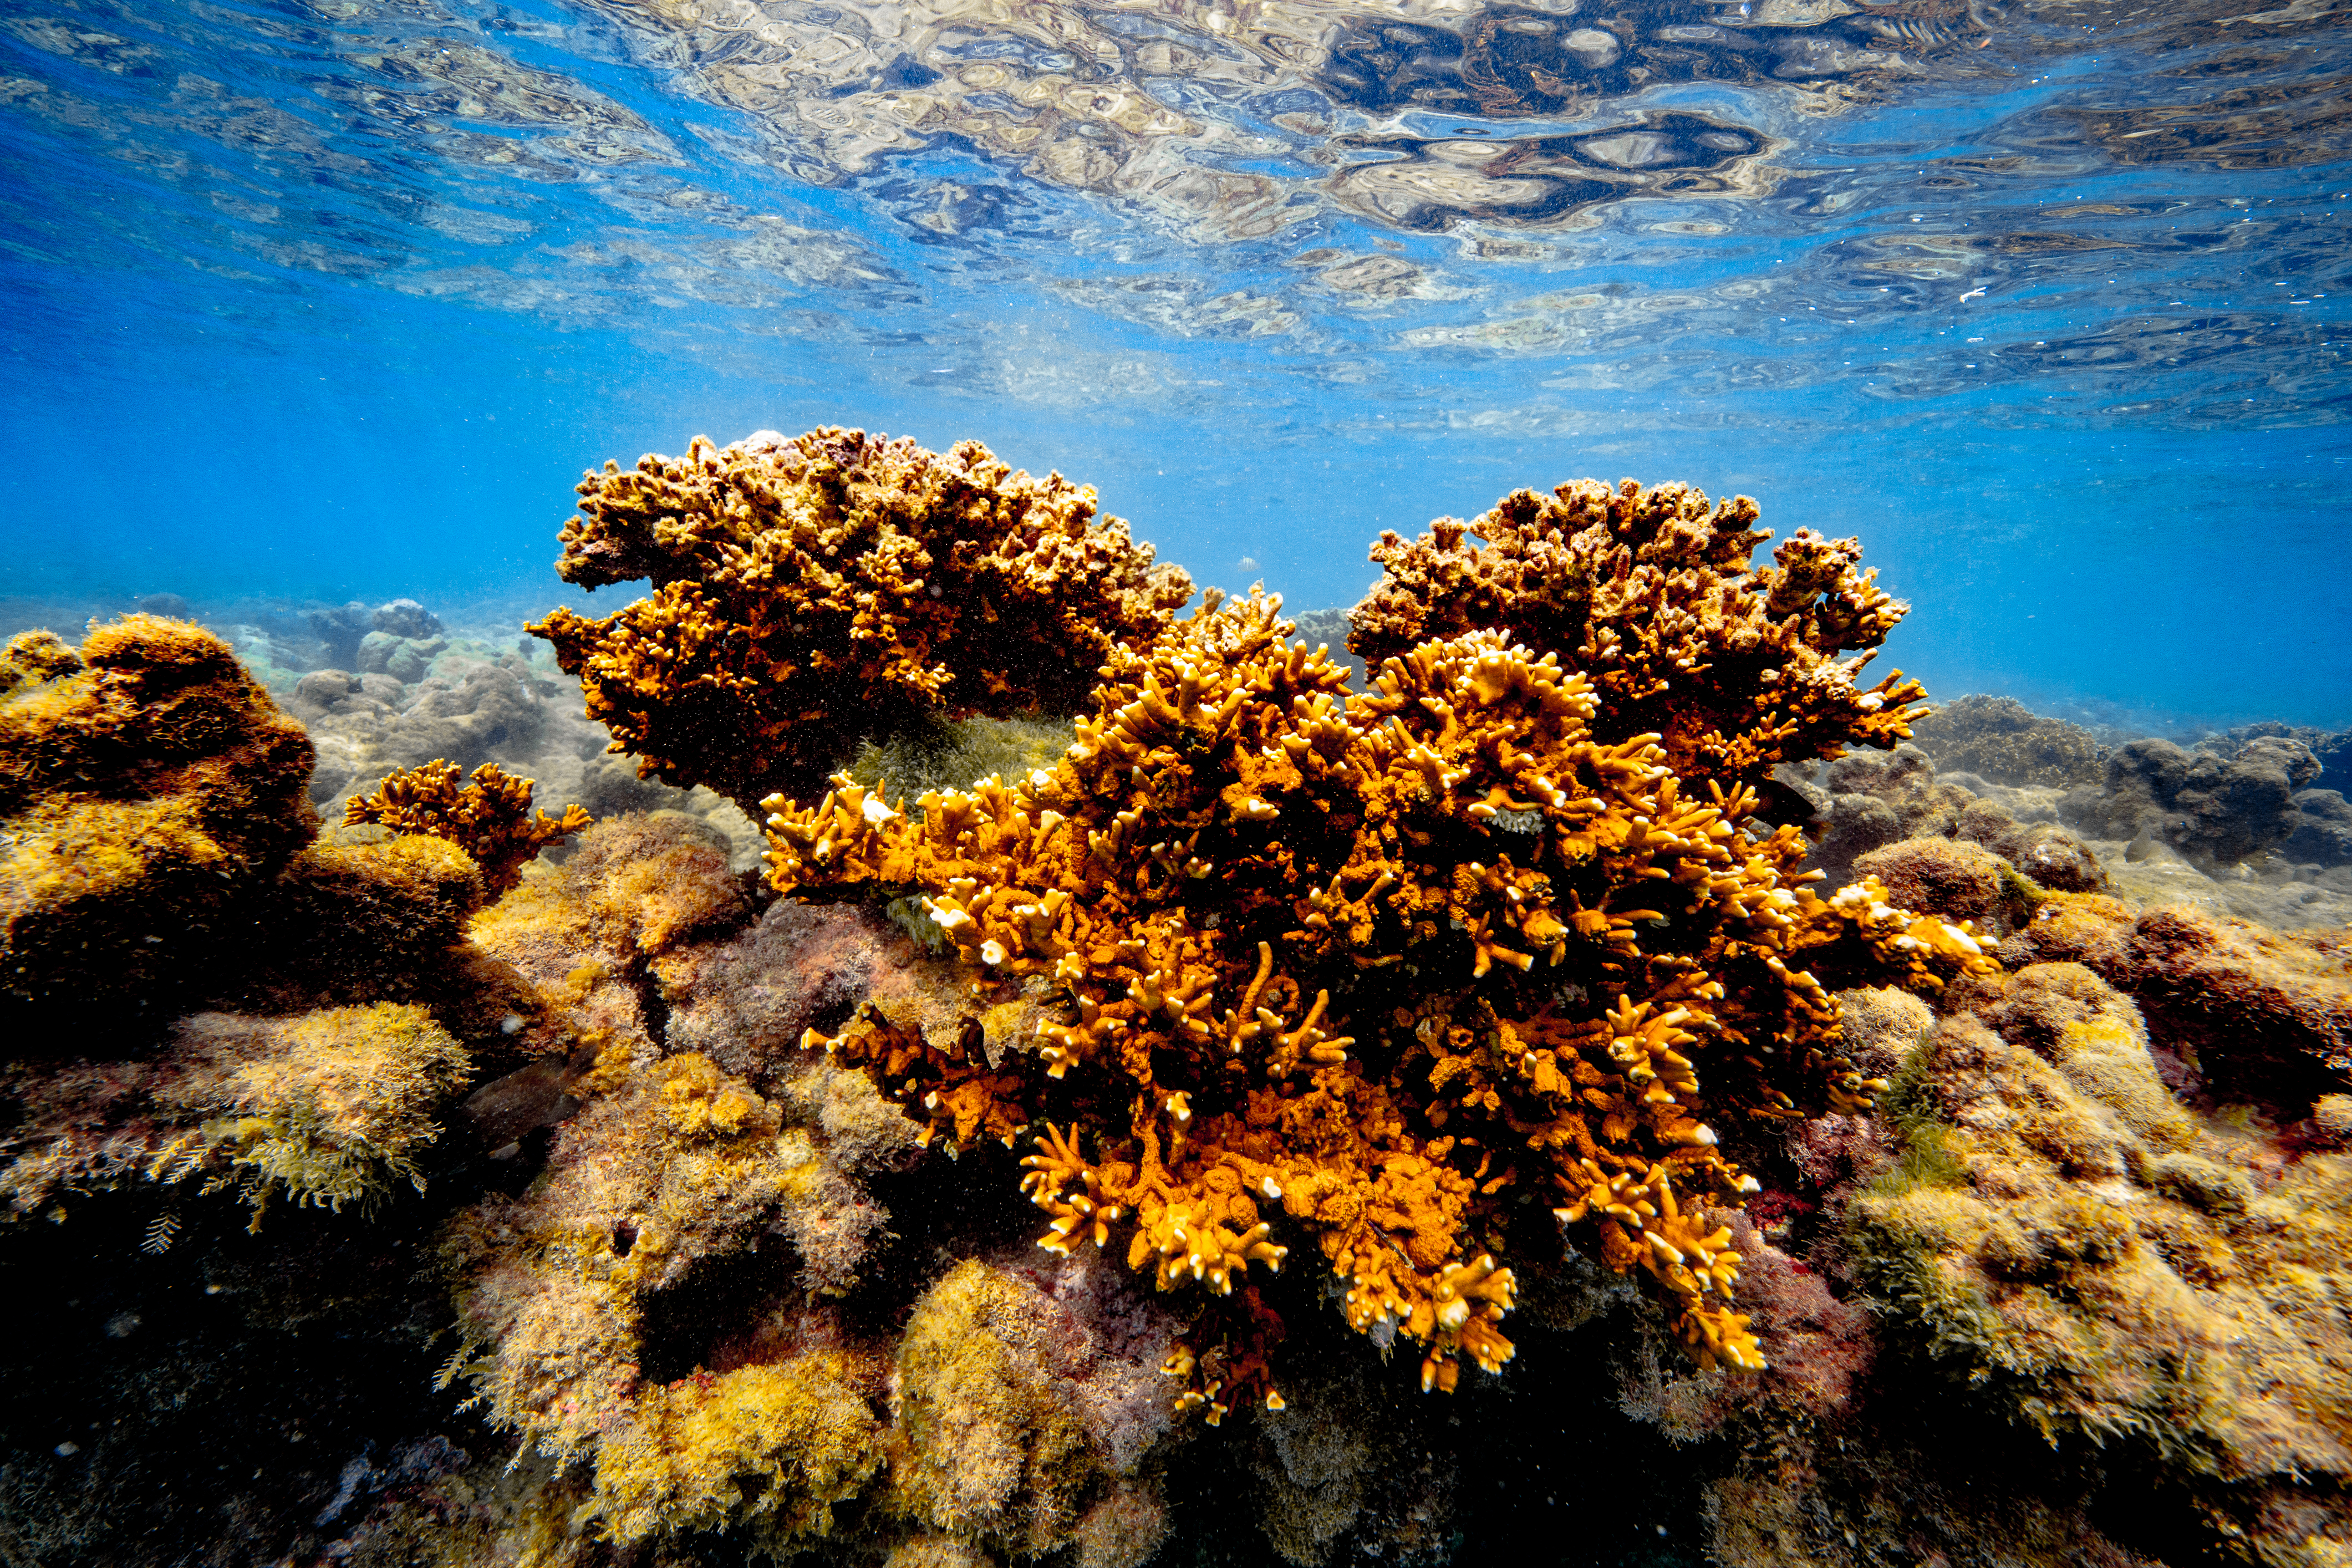 Os recifes de corais funcionam como uma barreira, reduzindo a energia e altura das ondas (Foto: Filipe Cadena/Fundao Grupo Boticrio)